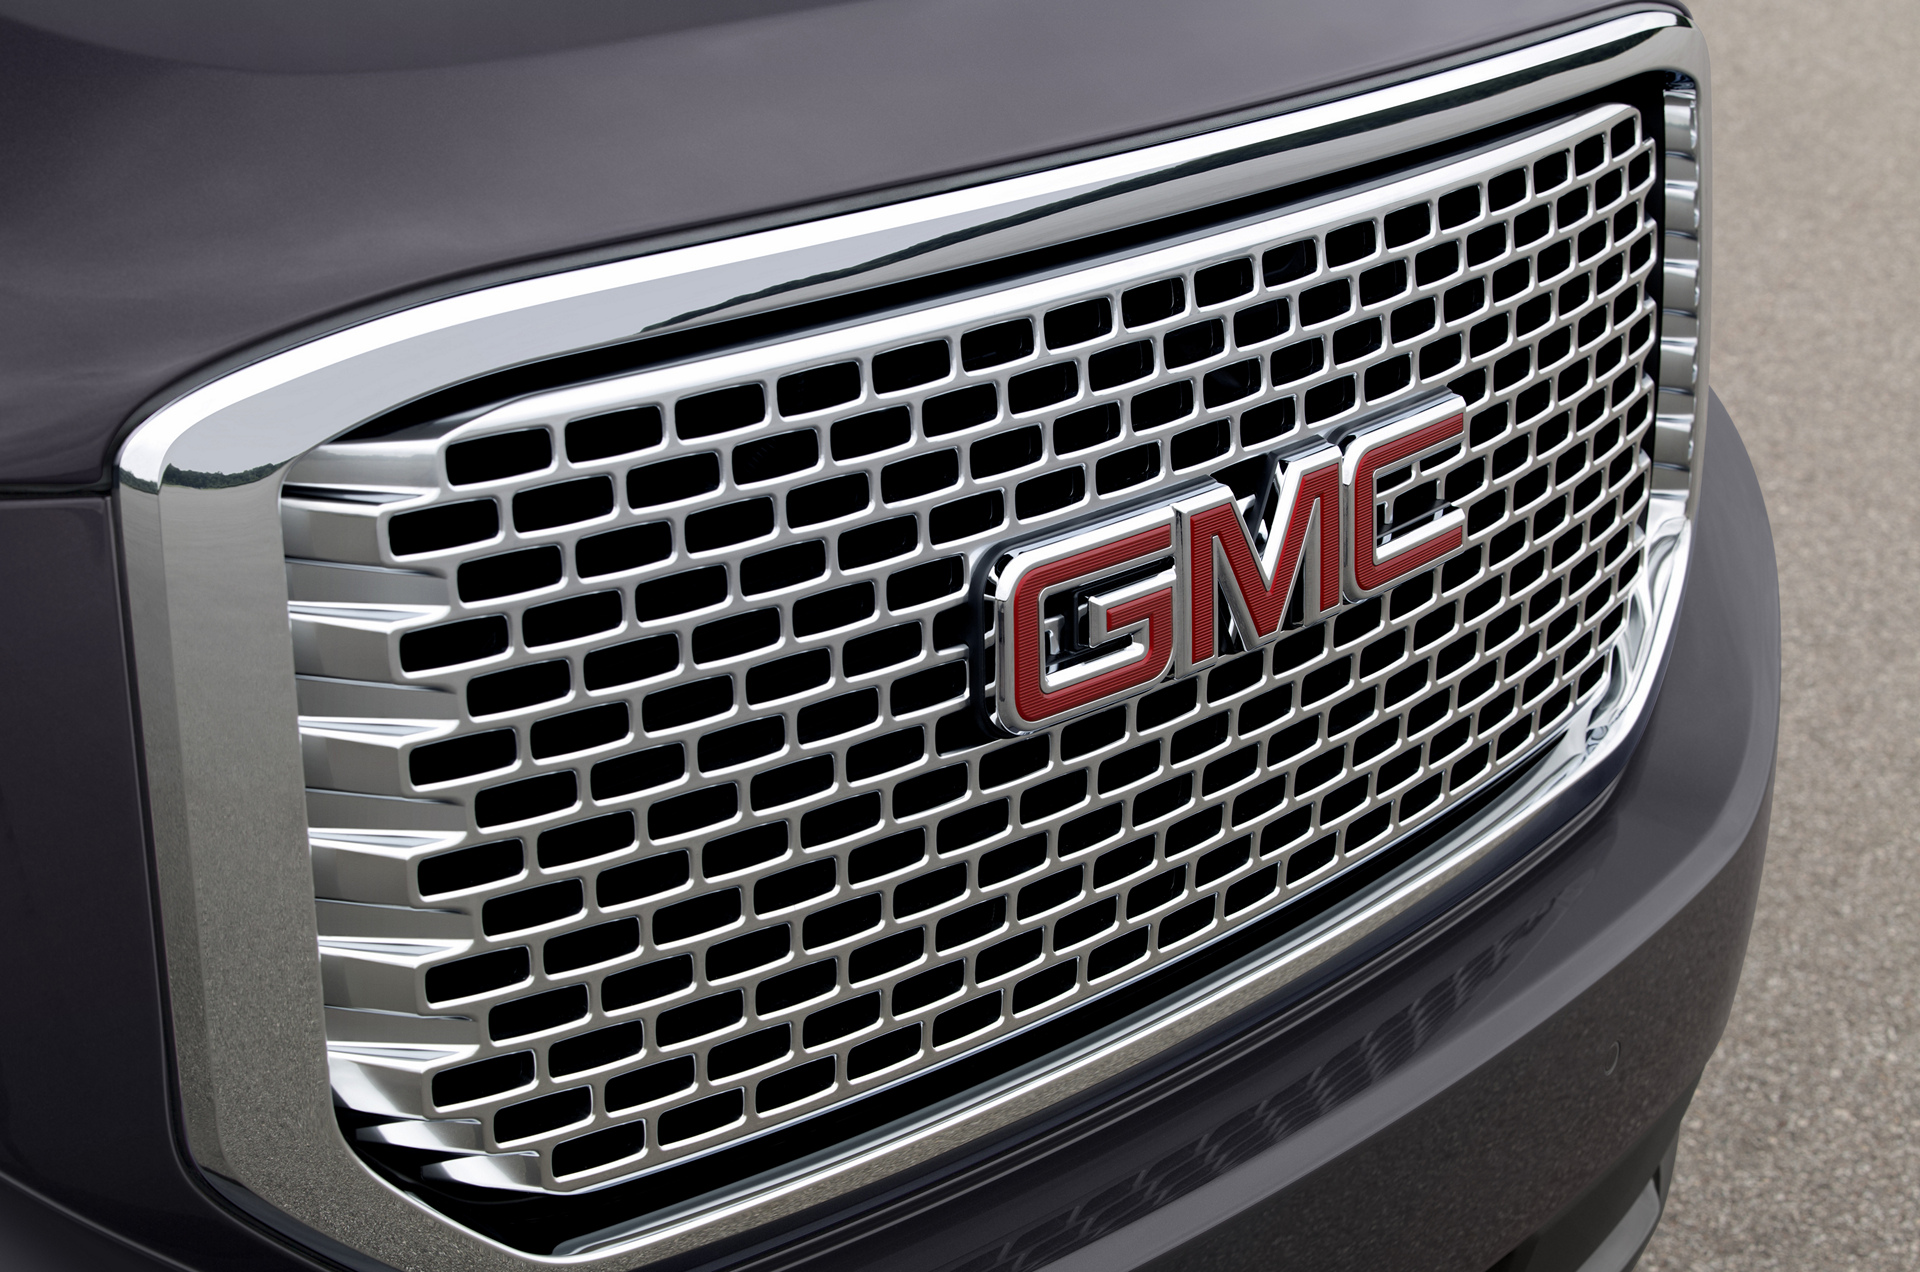 2016 GMC Yukon Denali © General Motors